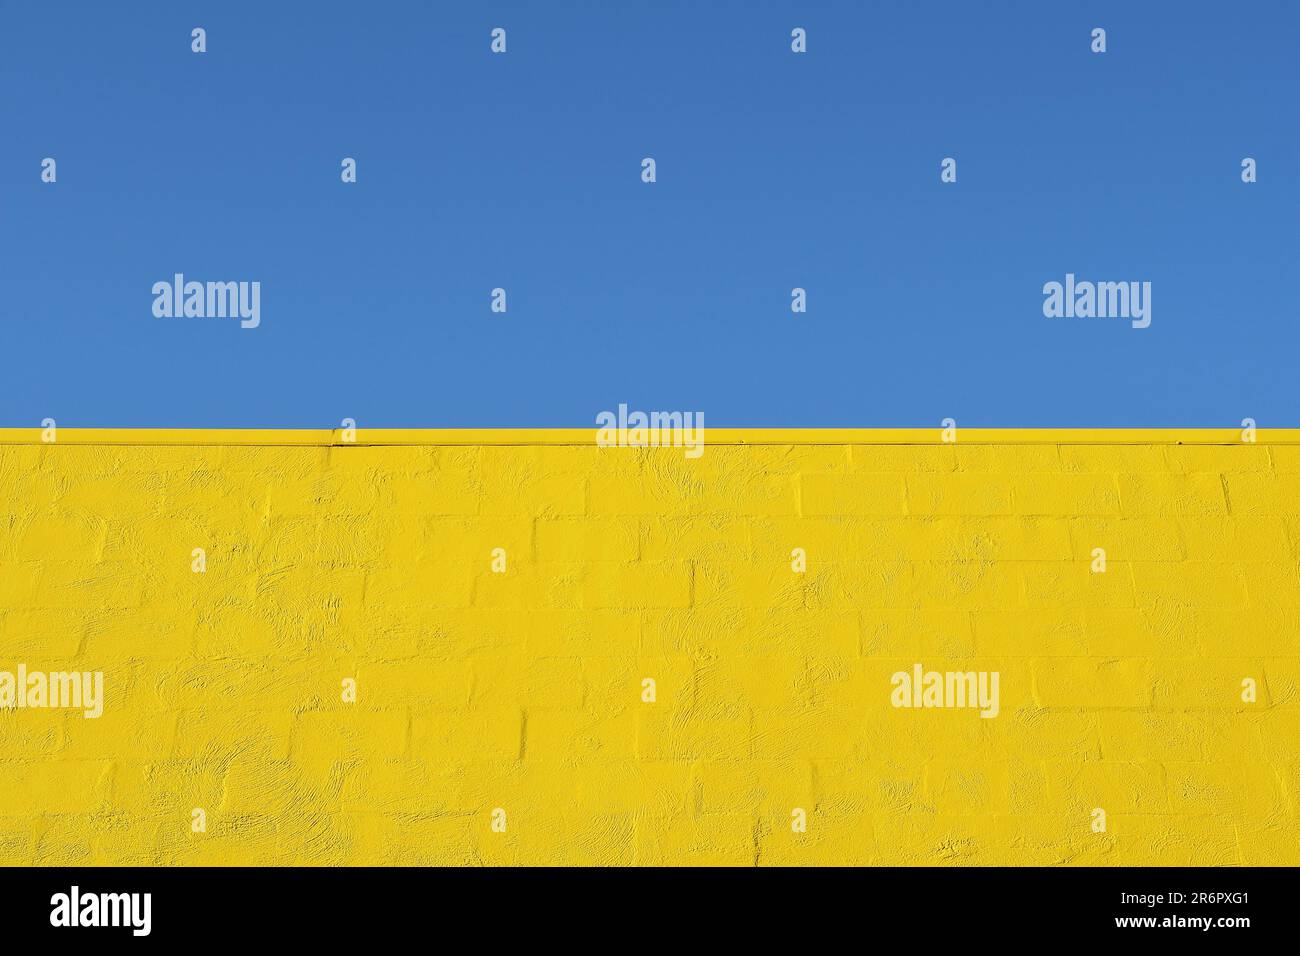 Ein blauer Himmel und eine starke gelbe Backsteinmauer im Design der ukrainischen Flagge als Symbol für die Stärke und Widerstandsfähigkeit des ukrainischen Volkes Stockfoto